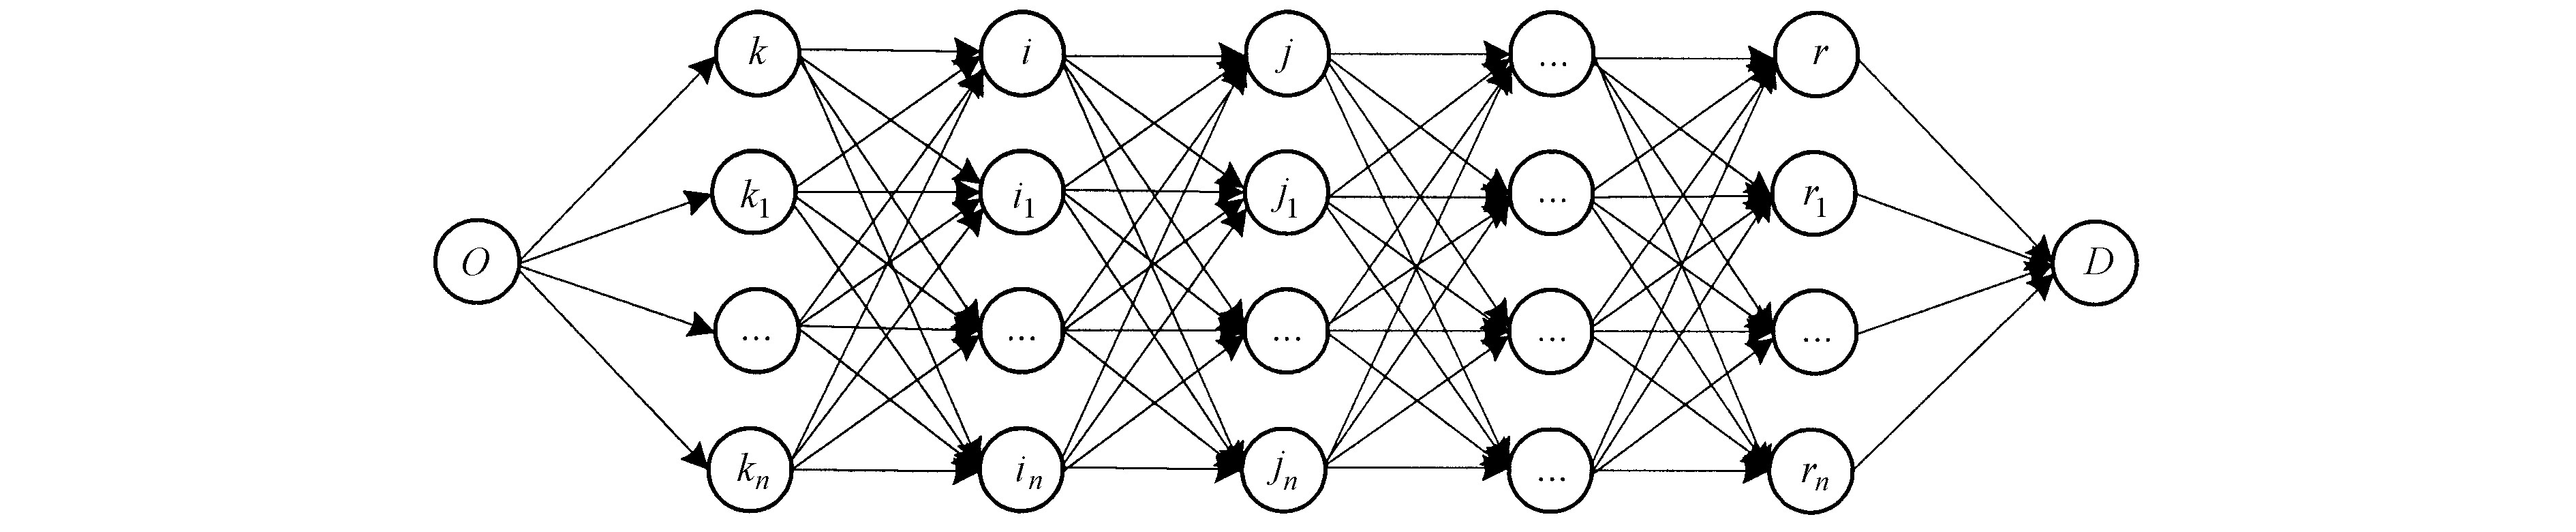 图1 多式联运运输网络